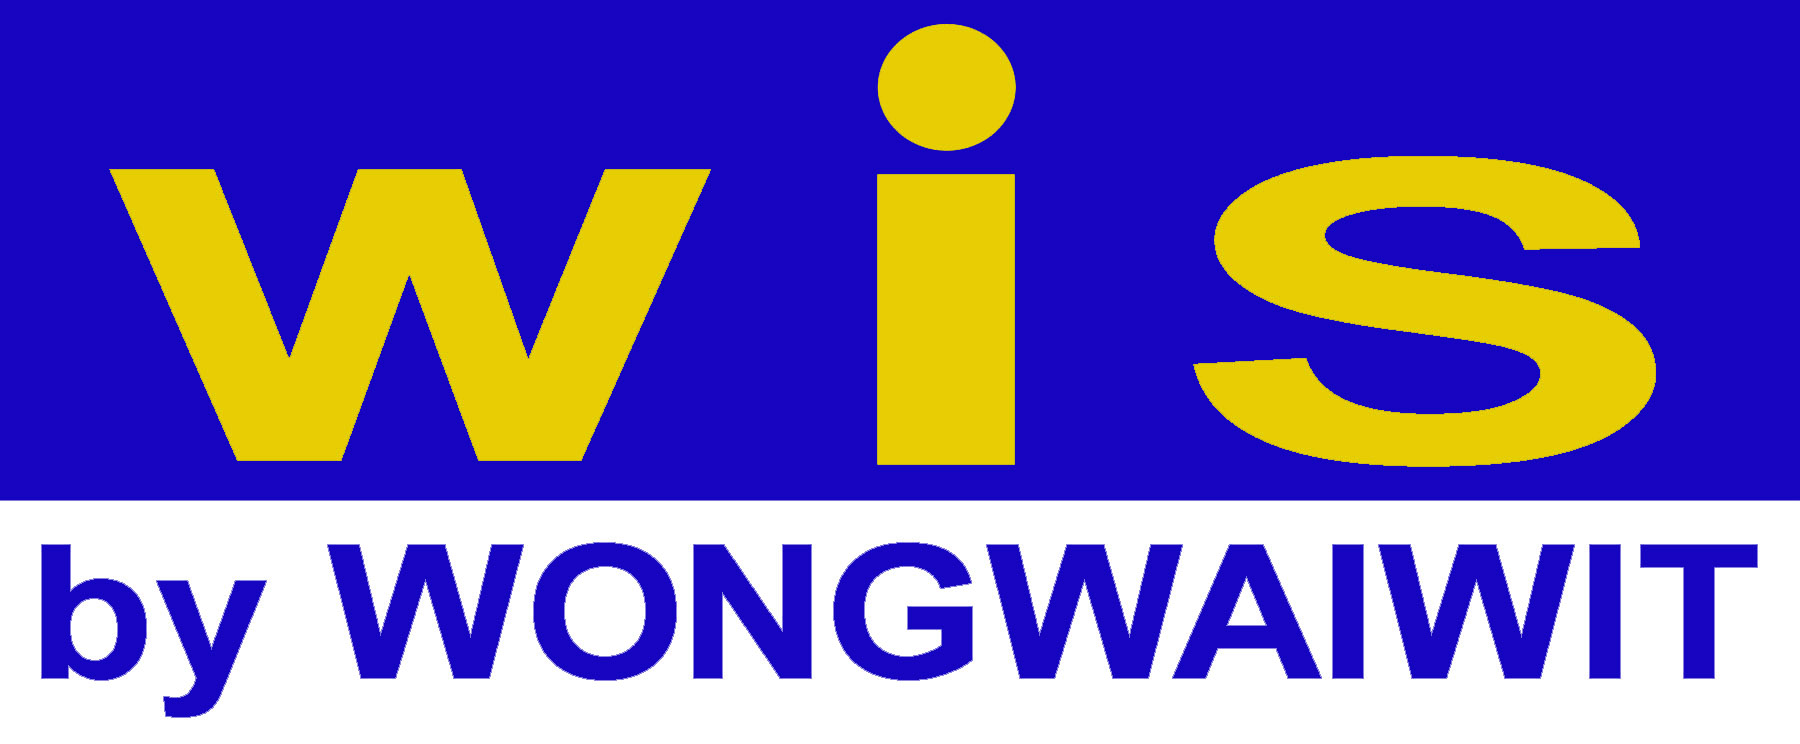 Wongwaiwit Industrial Supply Corporation Co.,Ltd , บริษัท ว่องไววิทย์ อินดัสเตรียล ซัพพลาย คอร์ปอเรชั่น จำกัด